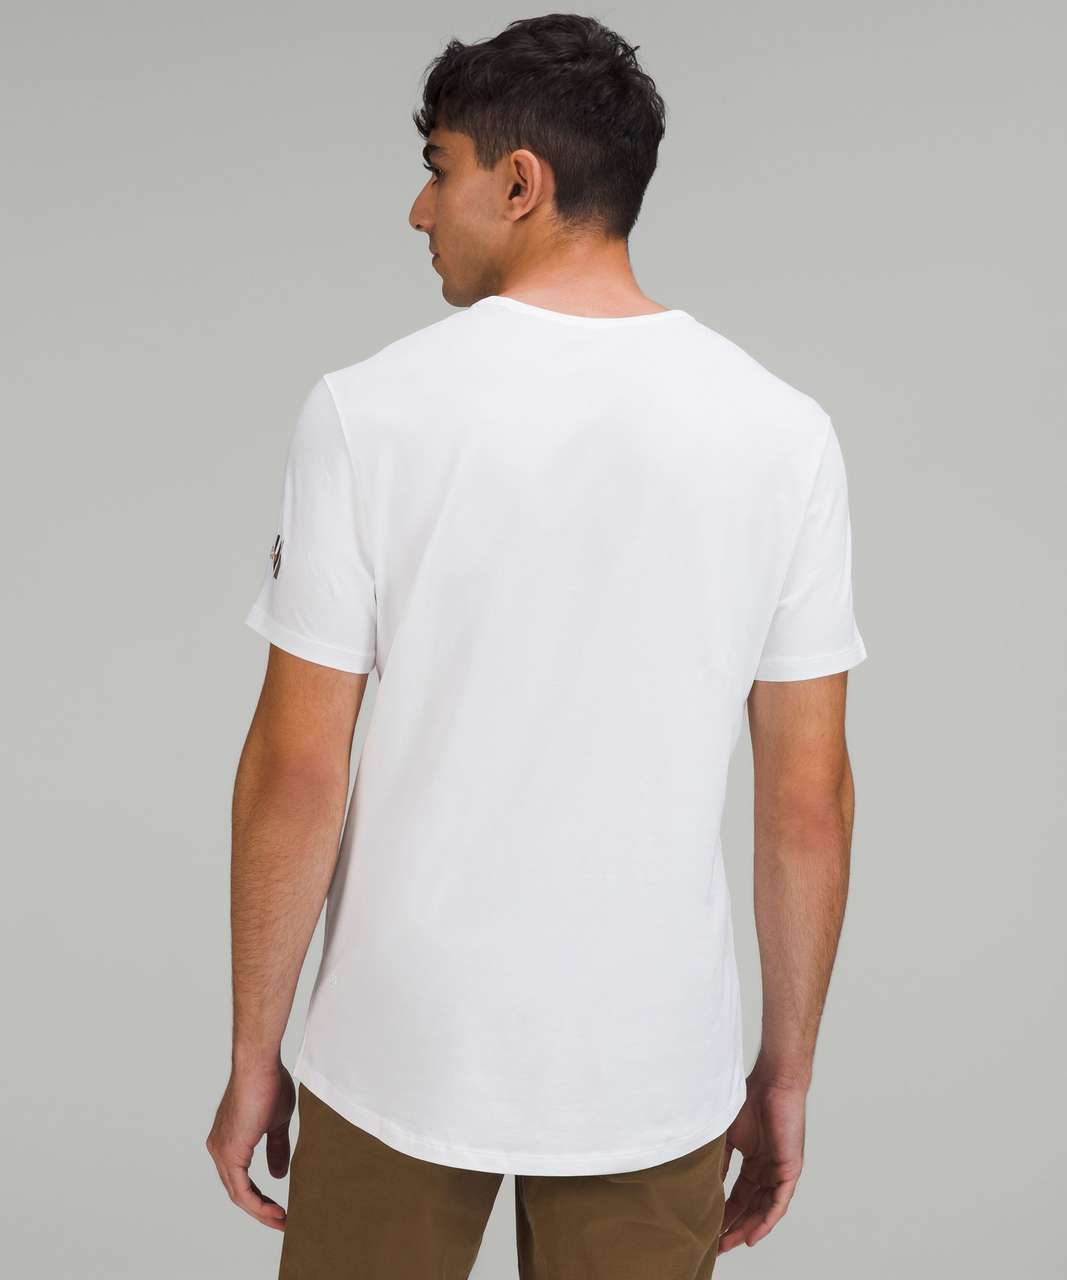 Lululemon 5 Year Basic T-Shirt *Chicago - White